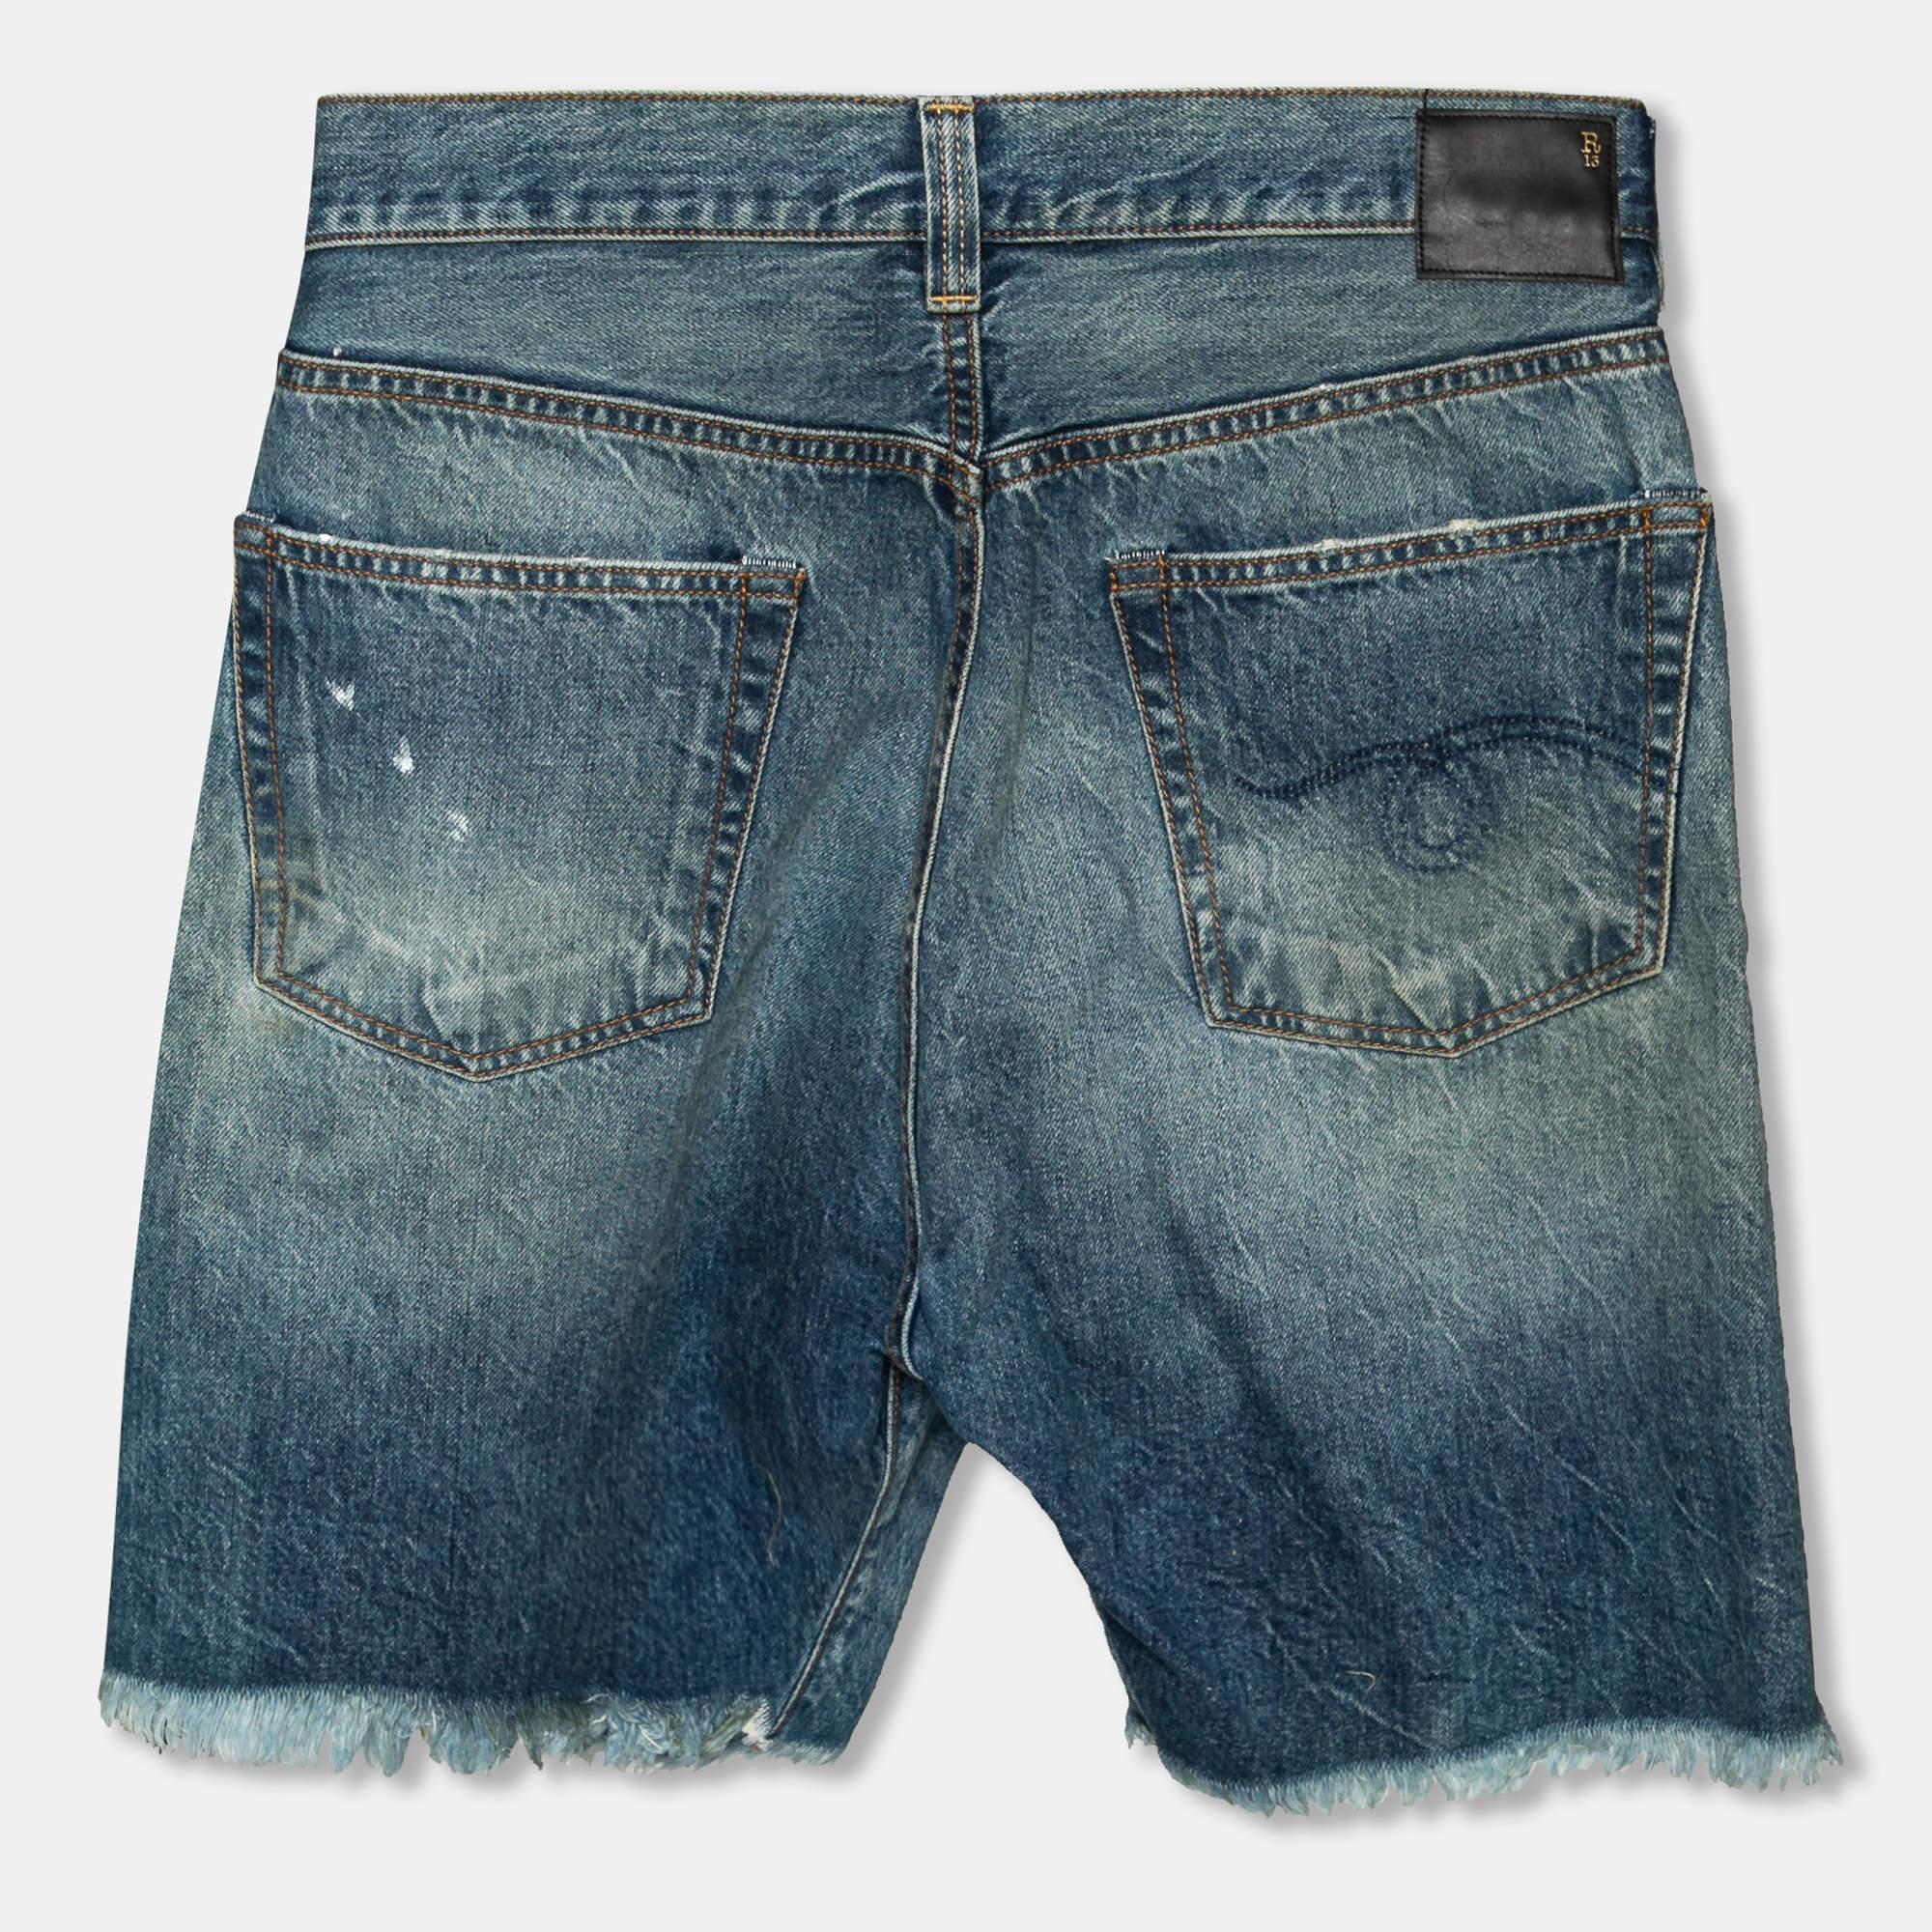 Aktualisieren Sie Ihre Garderobe mit diesen Shorts von R13. Diese blauen Denim-Shorts mit asymmetrischem Frontverschluss, fünf Taschen und ausgefransten Rändern sorgen für eine bequeme Passform und einen modischen Look. Tragen Sie sie mit einem